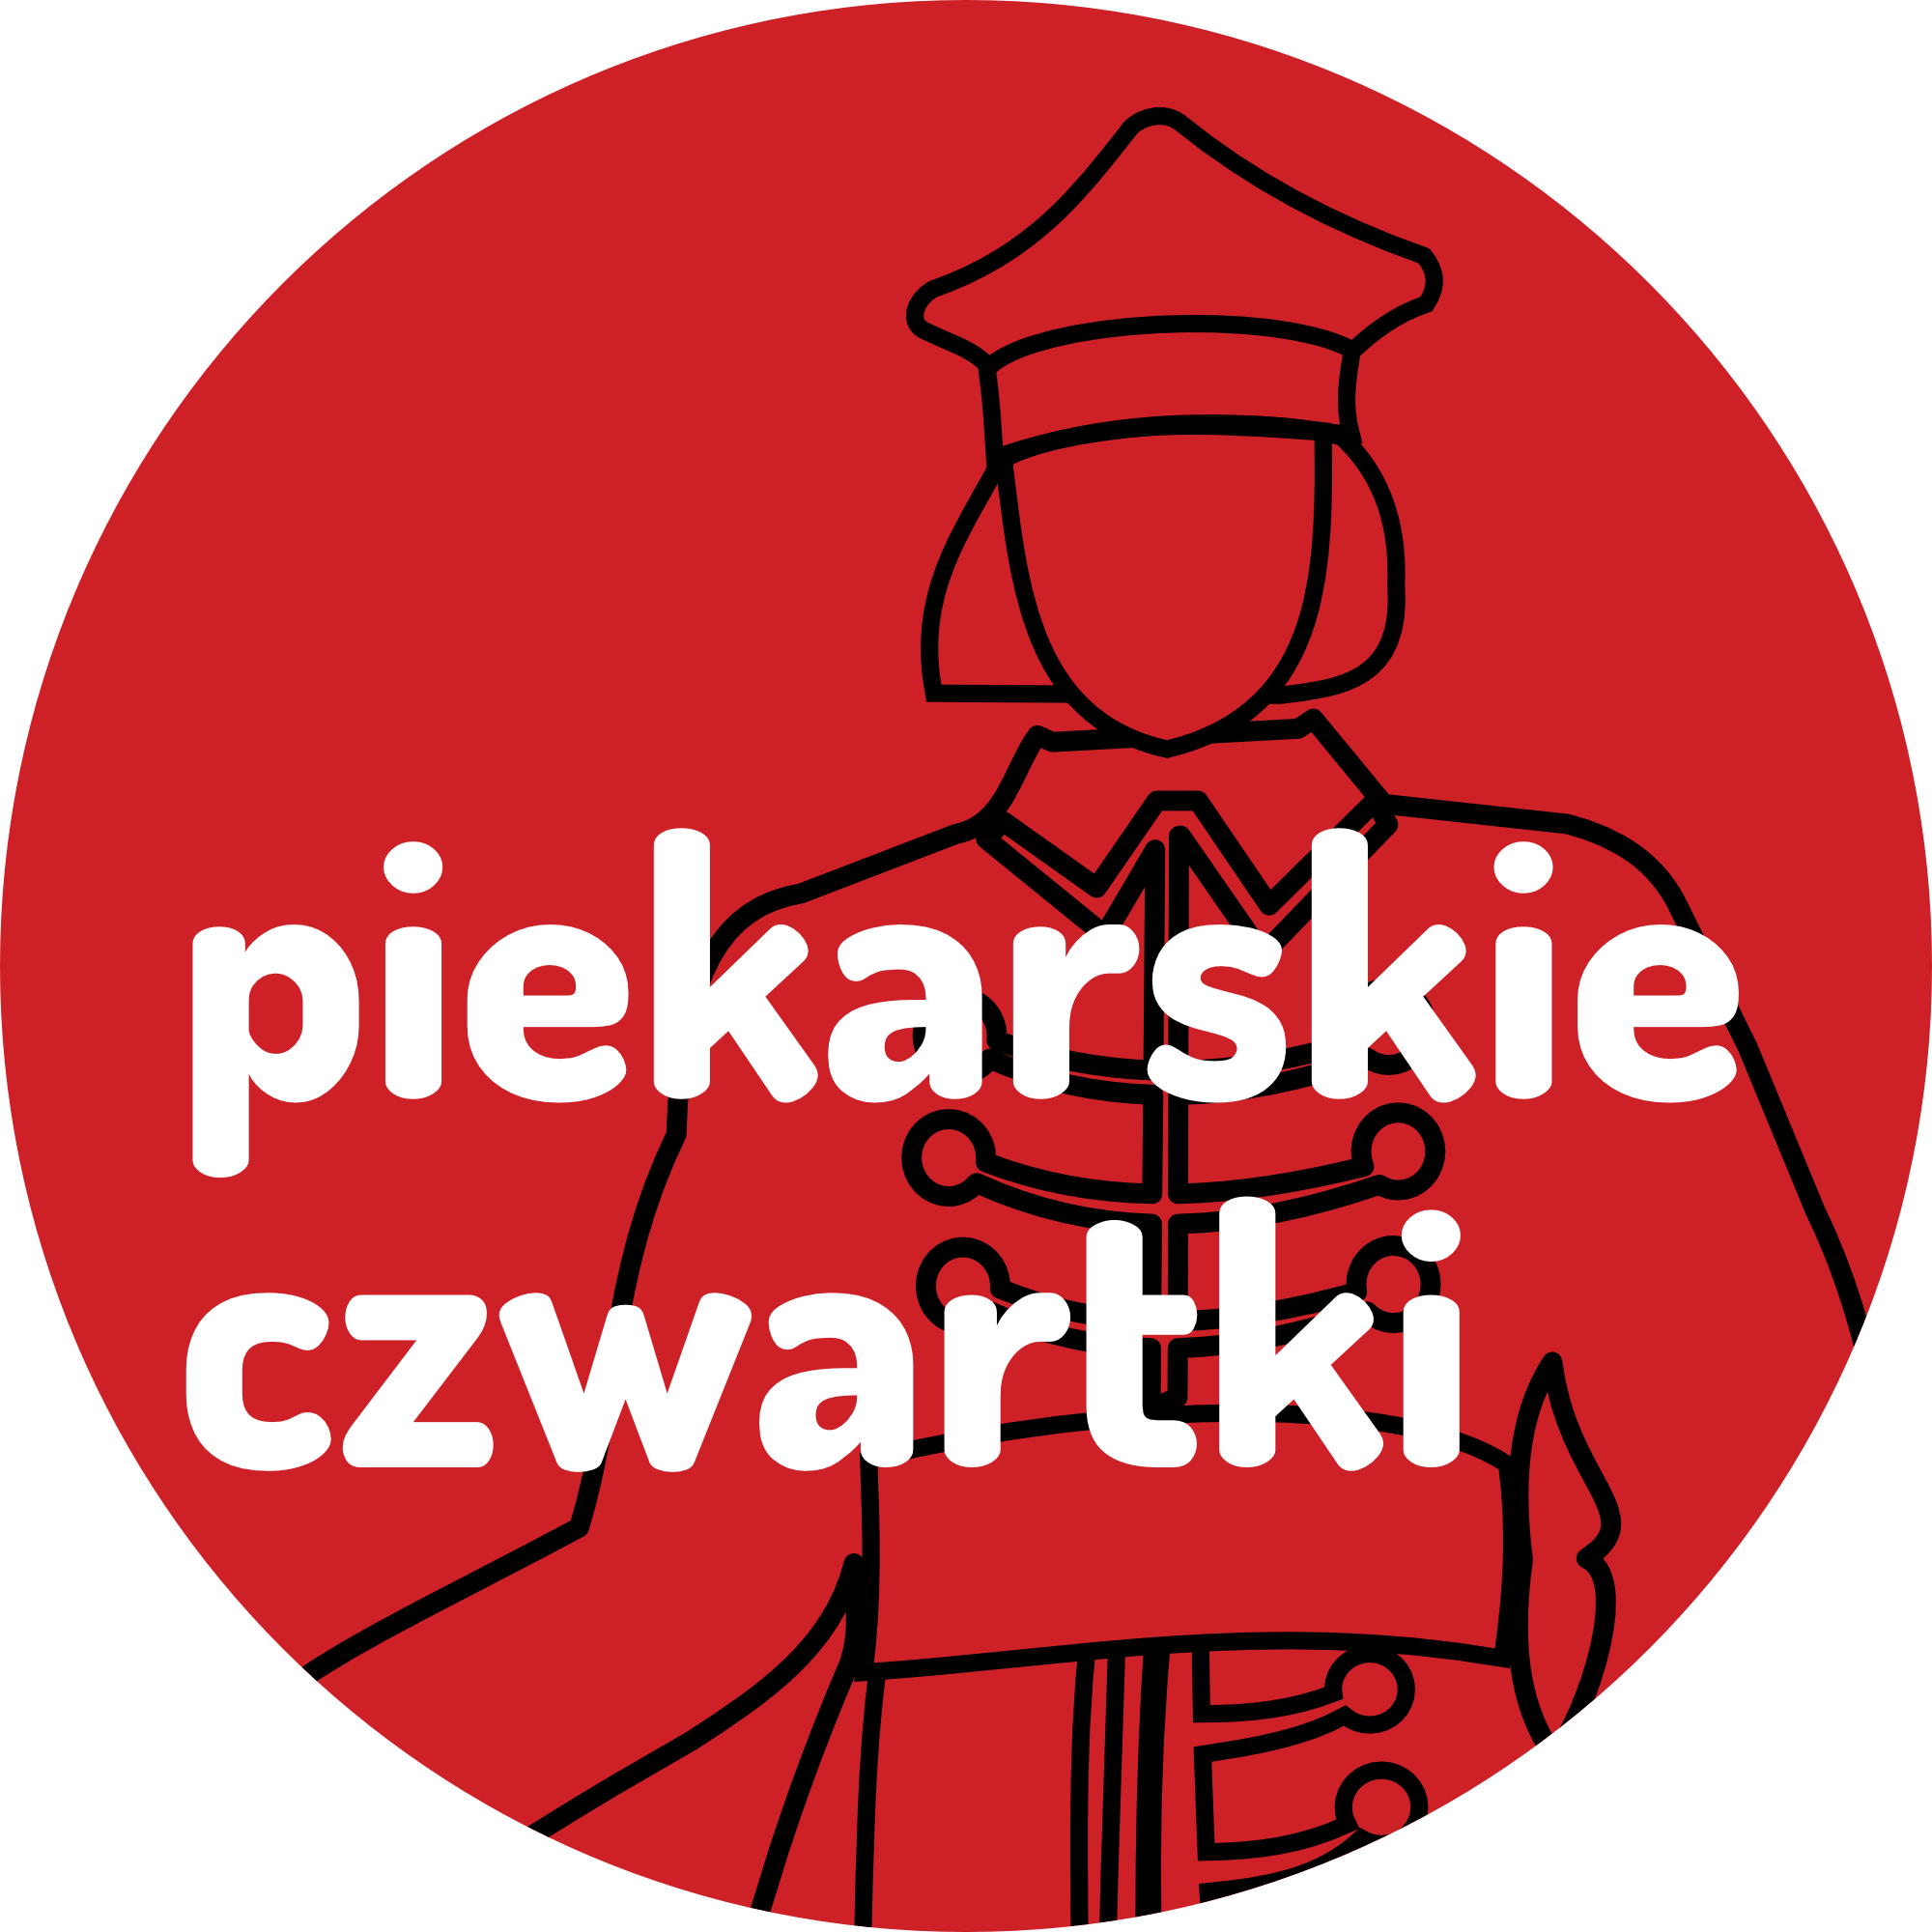 //kinozacisze.pl/wp-content/uploads/2020/04/piekarskie-czwartki.png